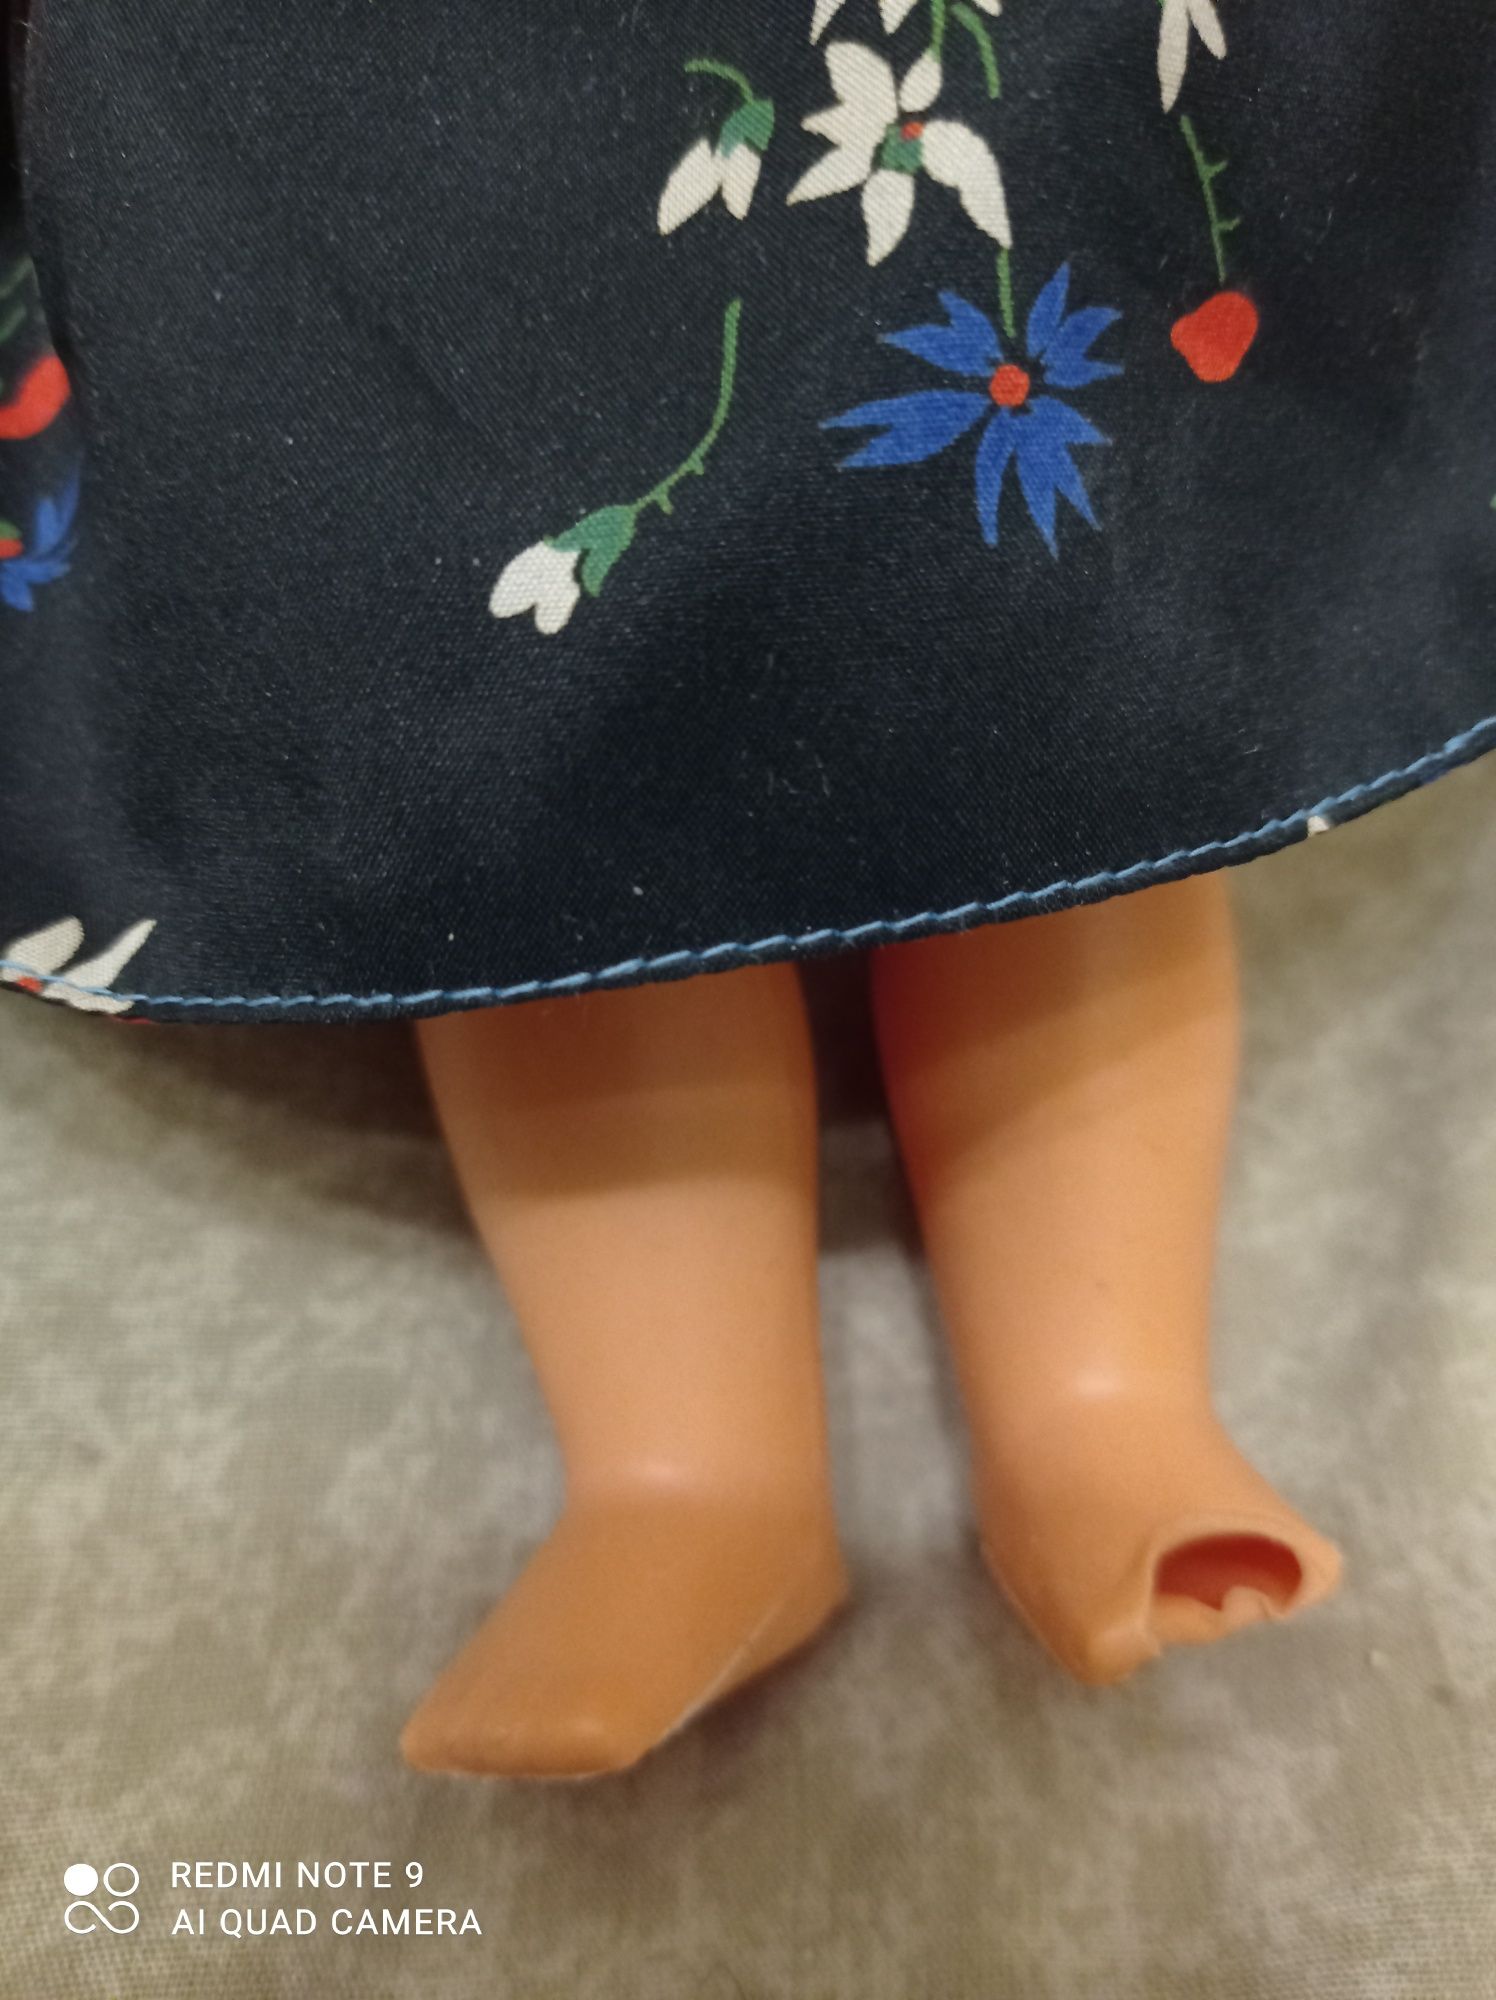 Винтажная кукла Cabar Италия